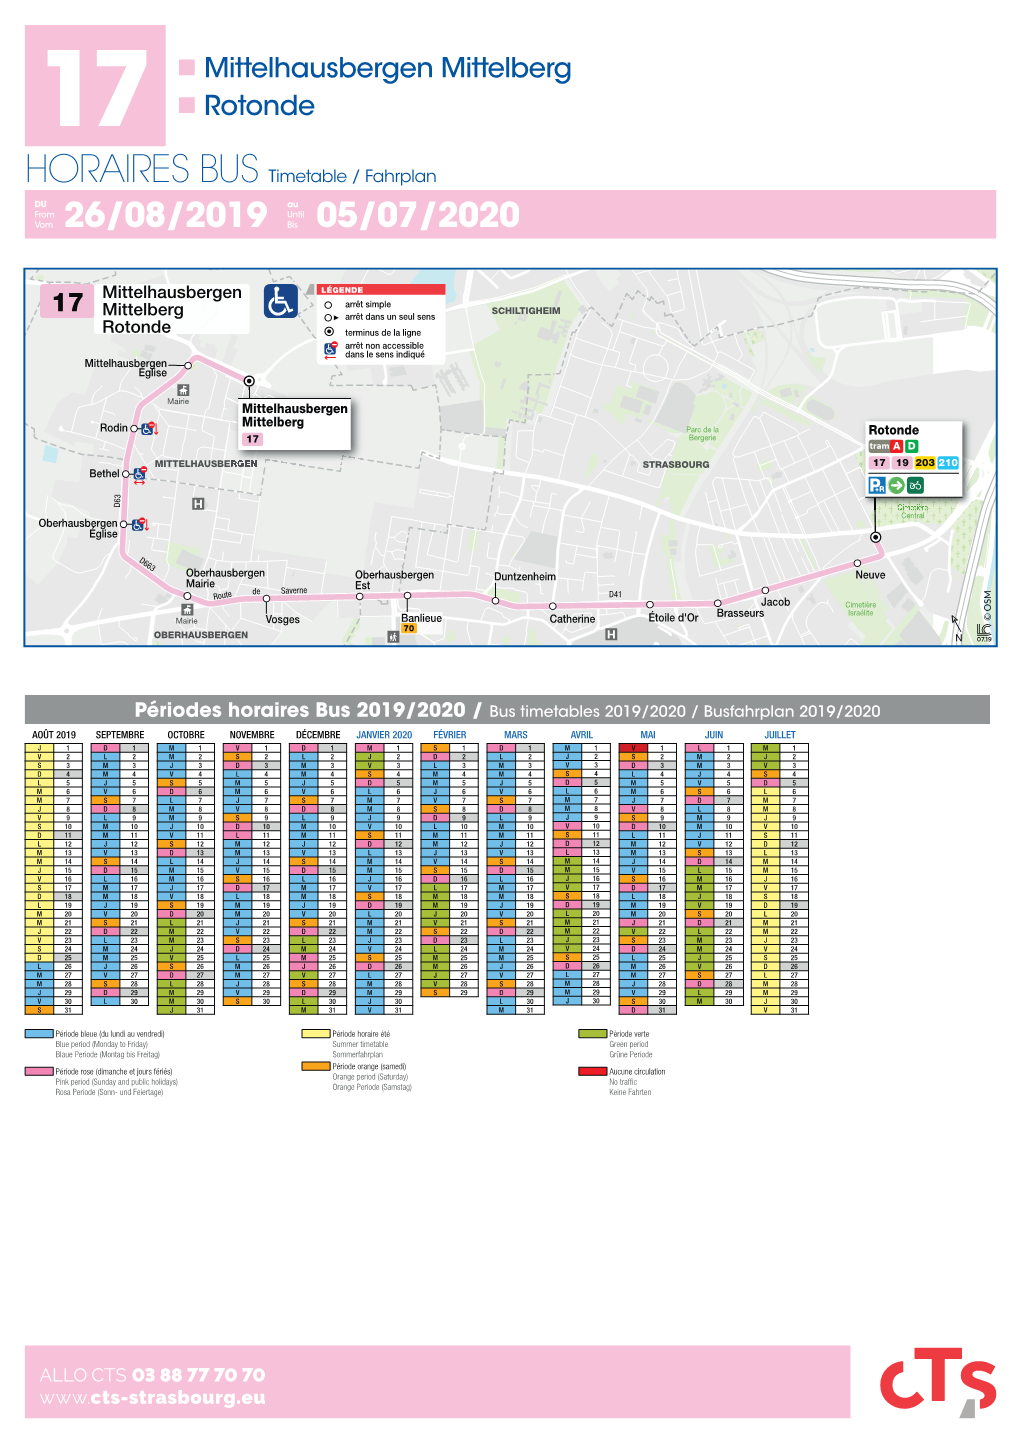 Mittelhausbergen Mittelberg 17  Rotonde HORAIRES BUS Timetable / Fahrplan DU Au from Until Vom 26/08/2019 Bis 05/07/2020